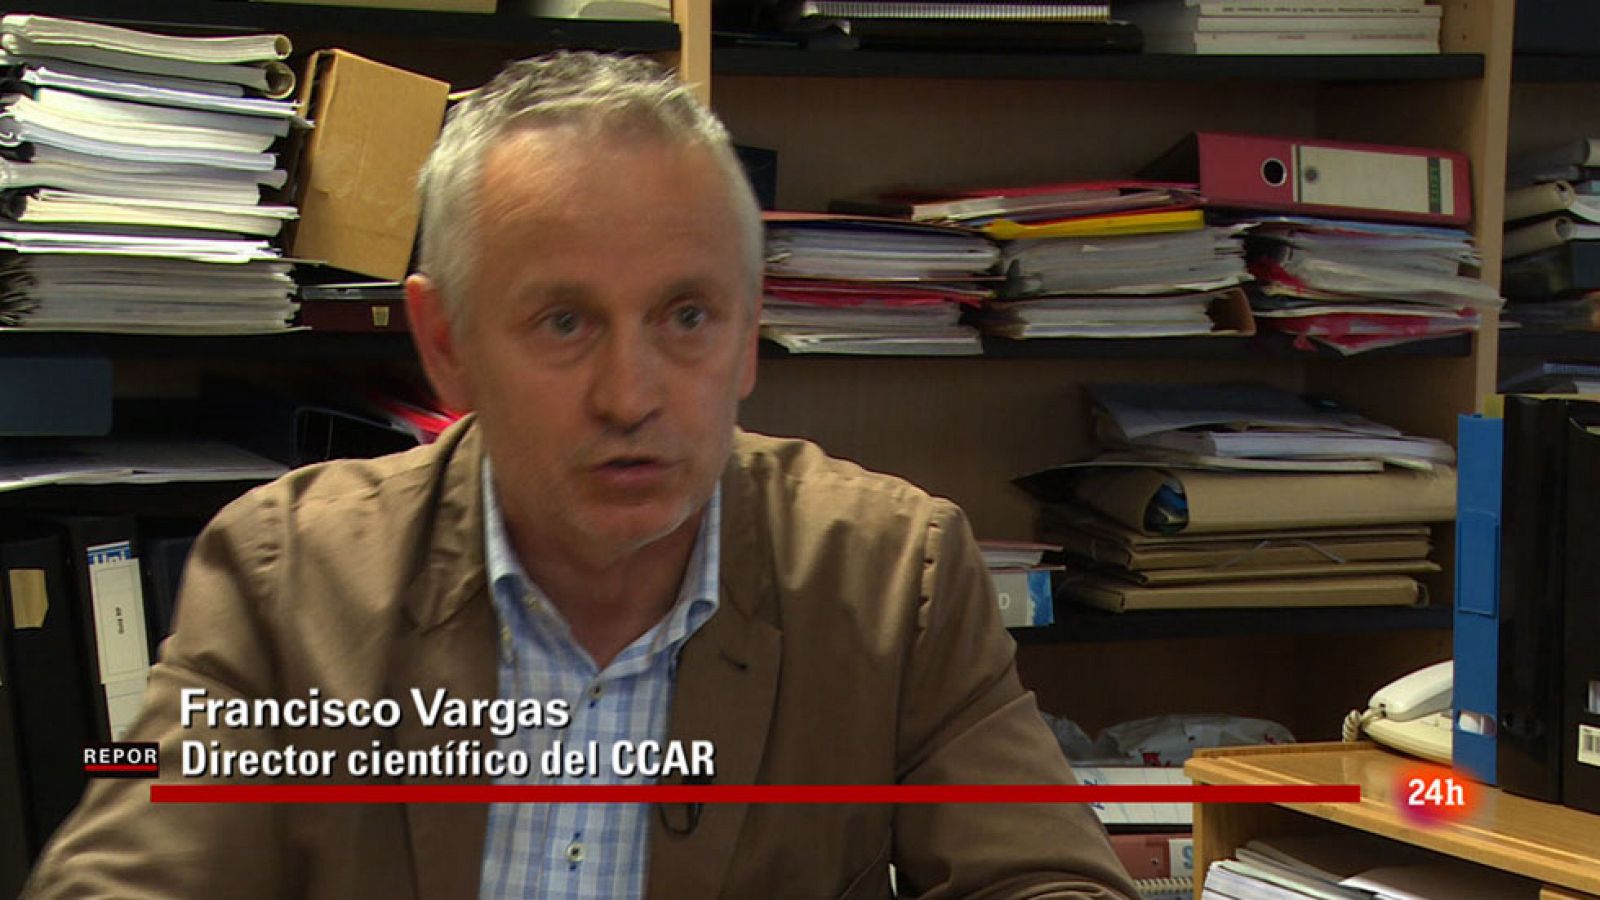 Repor - La guerra de las ondas - Francisco Vargas es director científico del CCAR (Comité científico asesor en radiofrecuencias)